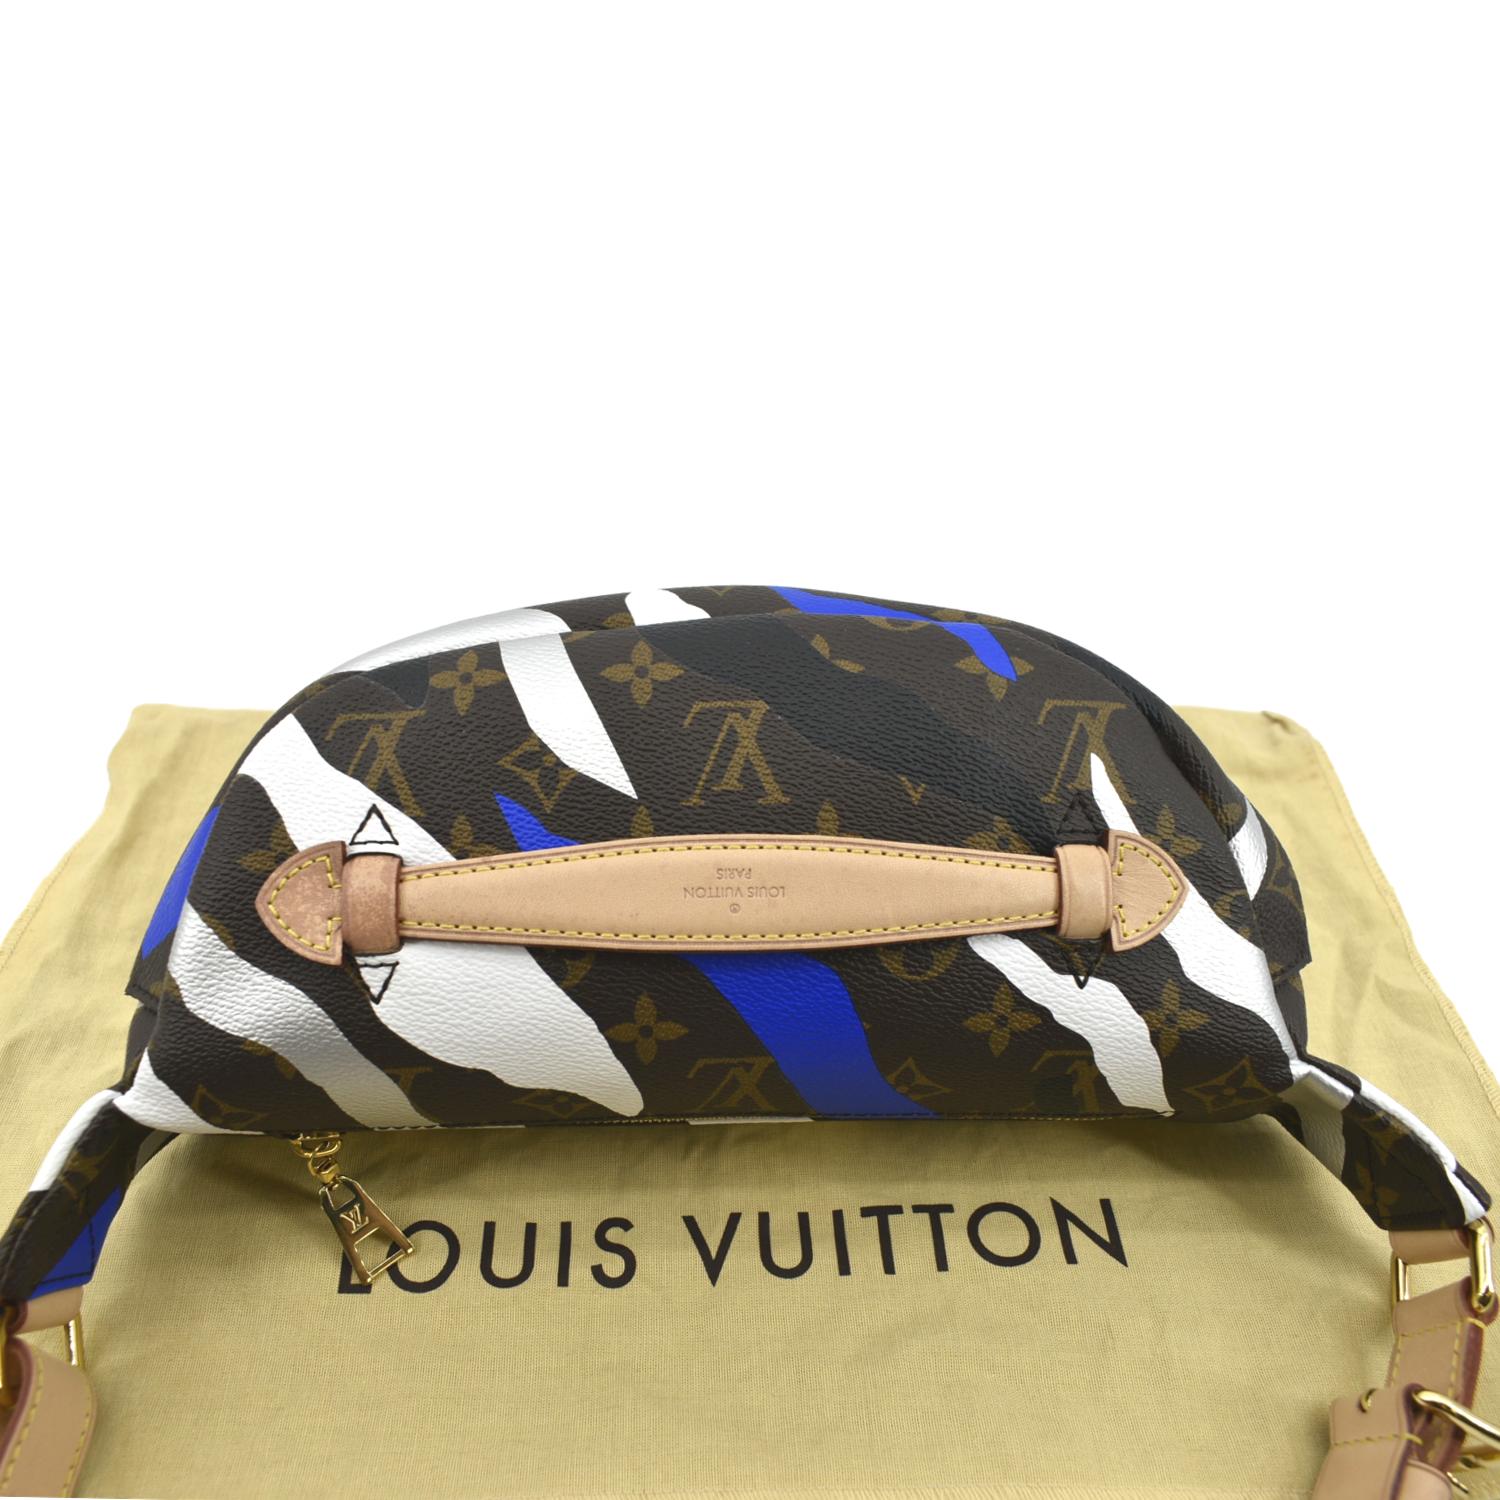 LOUIS VUITTON Monogram League of Legends Bum Bag Shoulder Bag